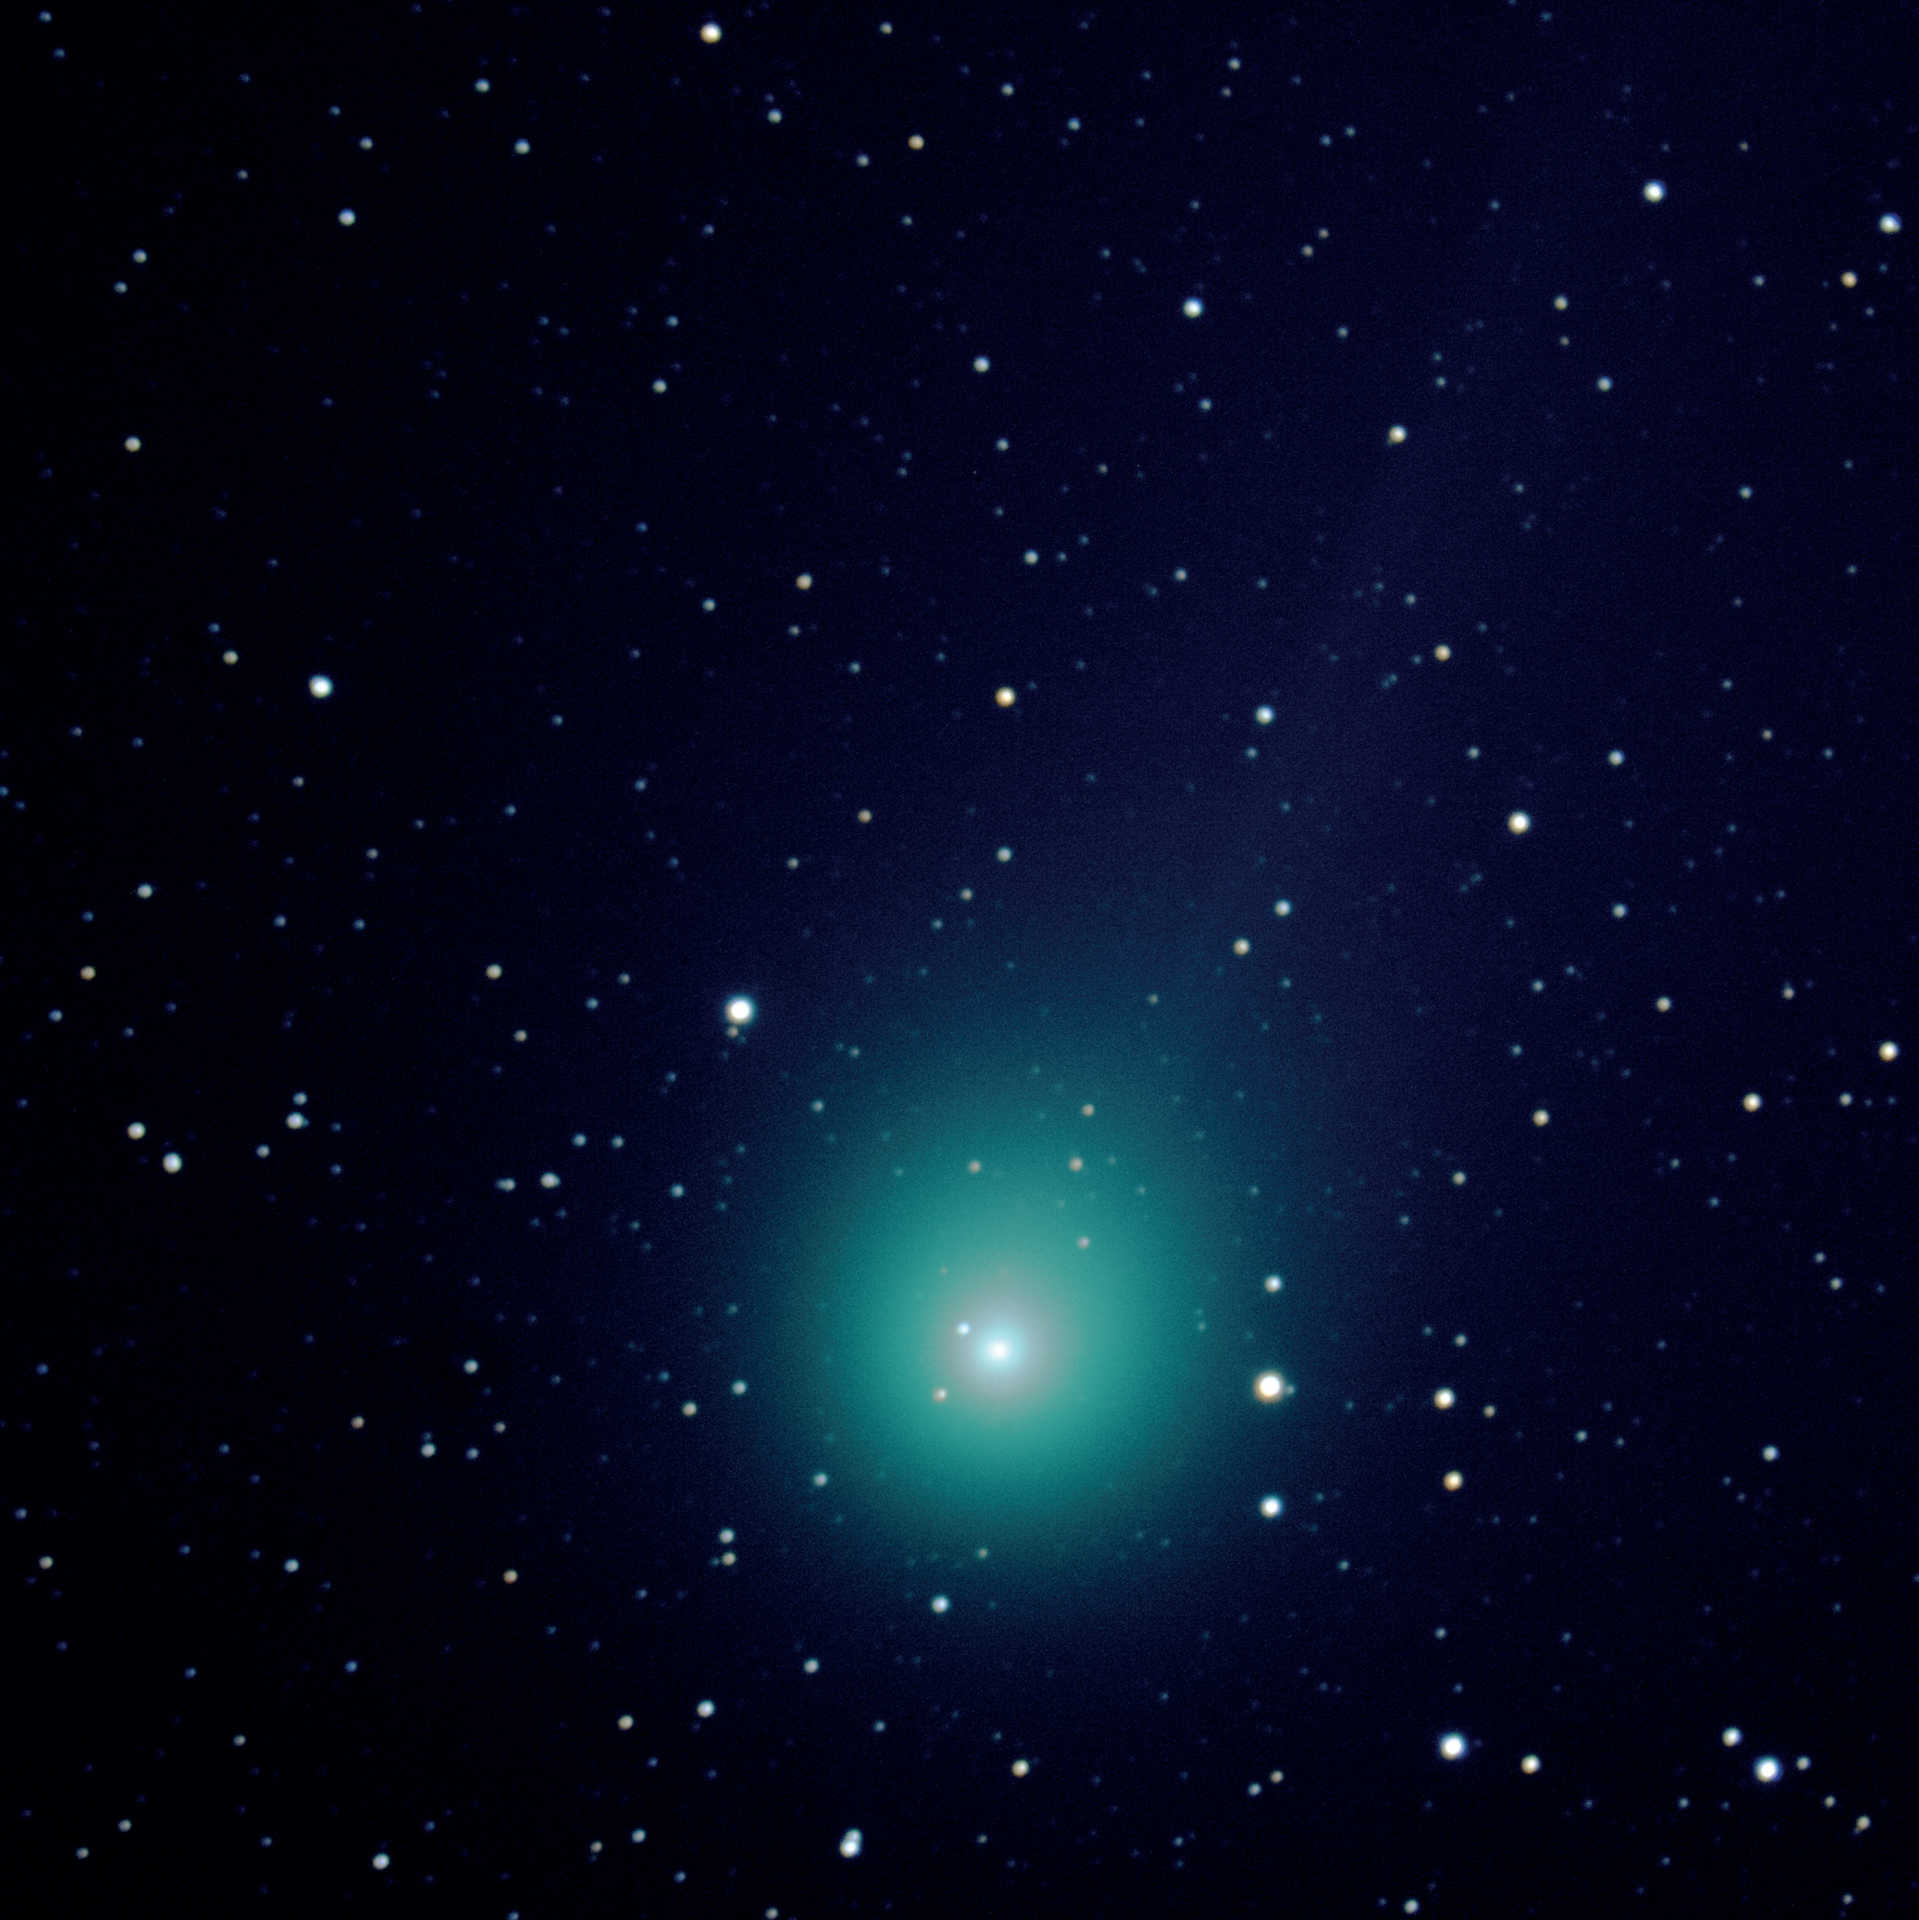 La cometa C/2014 Q2 (Lovejoy) ripresa da un telescopio Schmidt-Cassegrain con focale lunga. L'immagine è stata scattata il 07/03/2015, pochi minuti dopo l'immagine 3, con una DSLR di tipo Canon D550 su un telescopio con una lunghezza focale di 2000 mm e un'apertura di 280 mm. L’immagine è data dalla somma di cinque scatti di 120 secondi ciascuno (tempo di esposizione totale: 10 minuti), combinati con DeepSkyStacker e Photoshop. U. Dittler